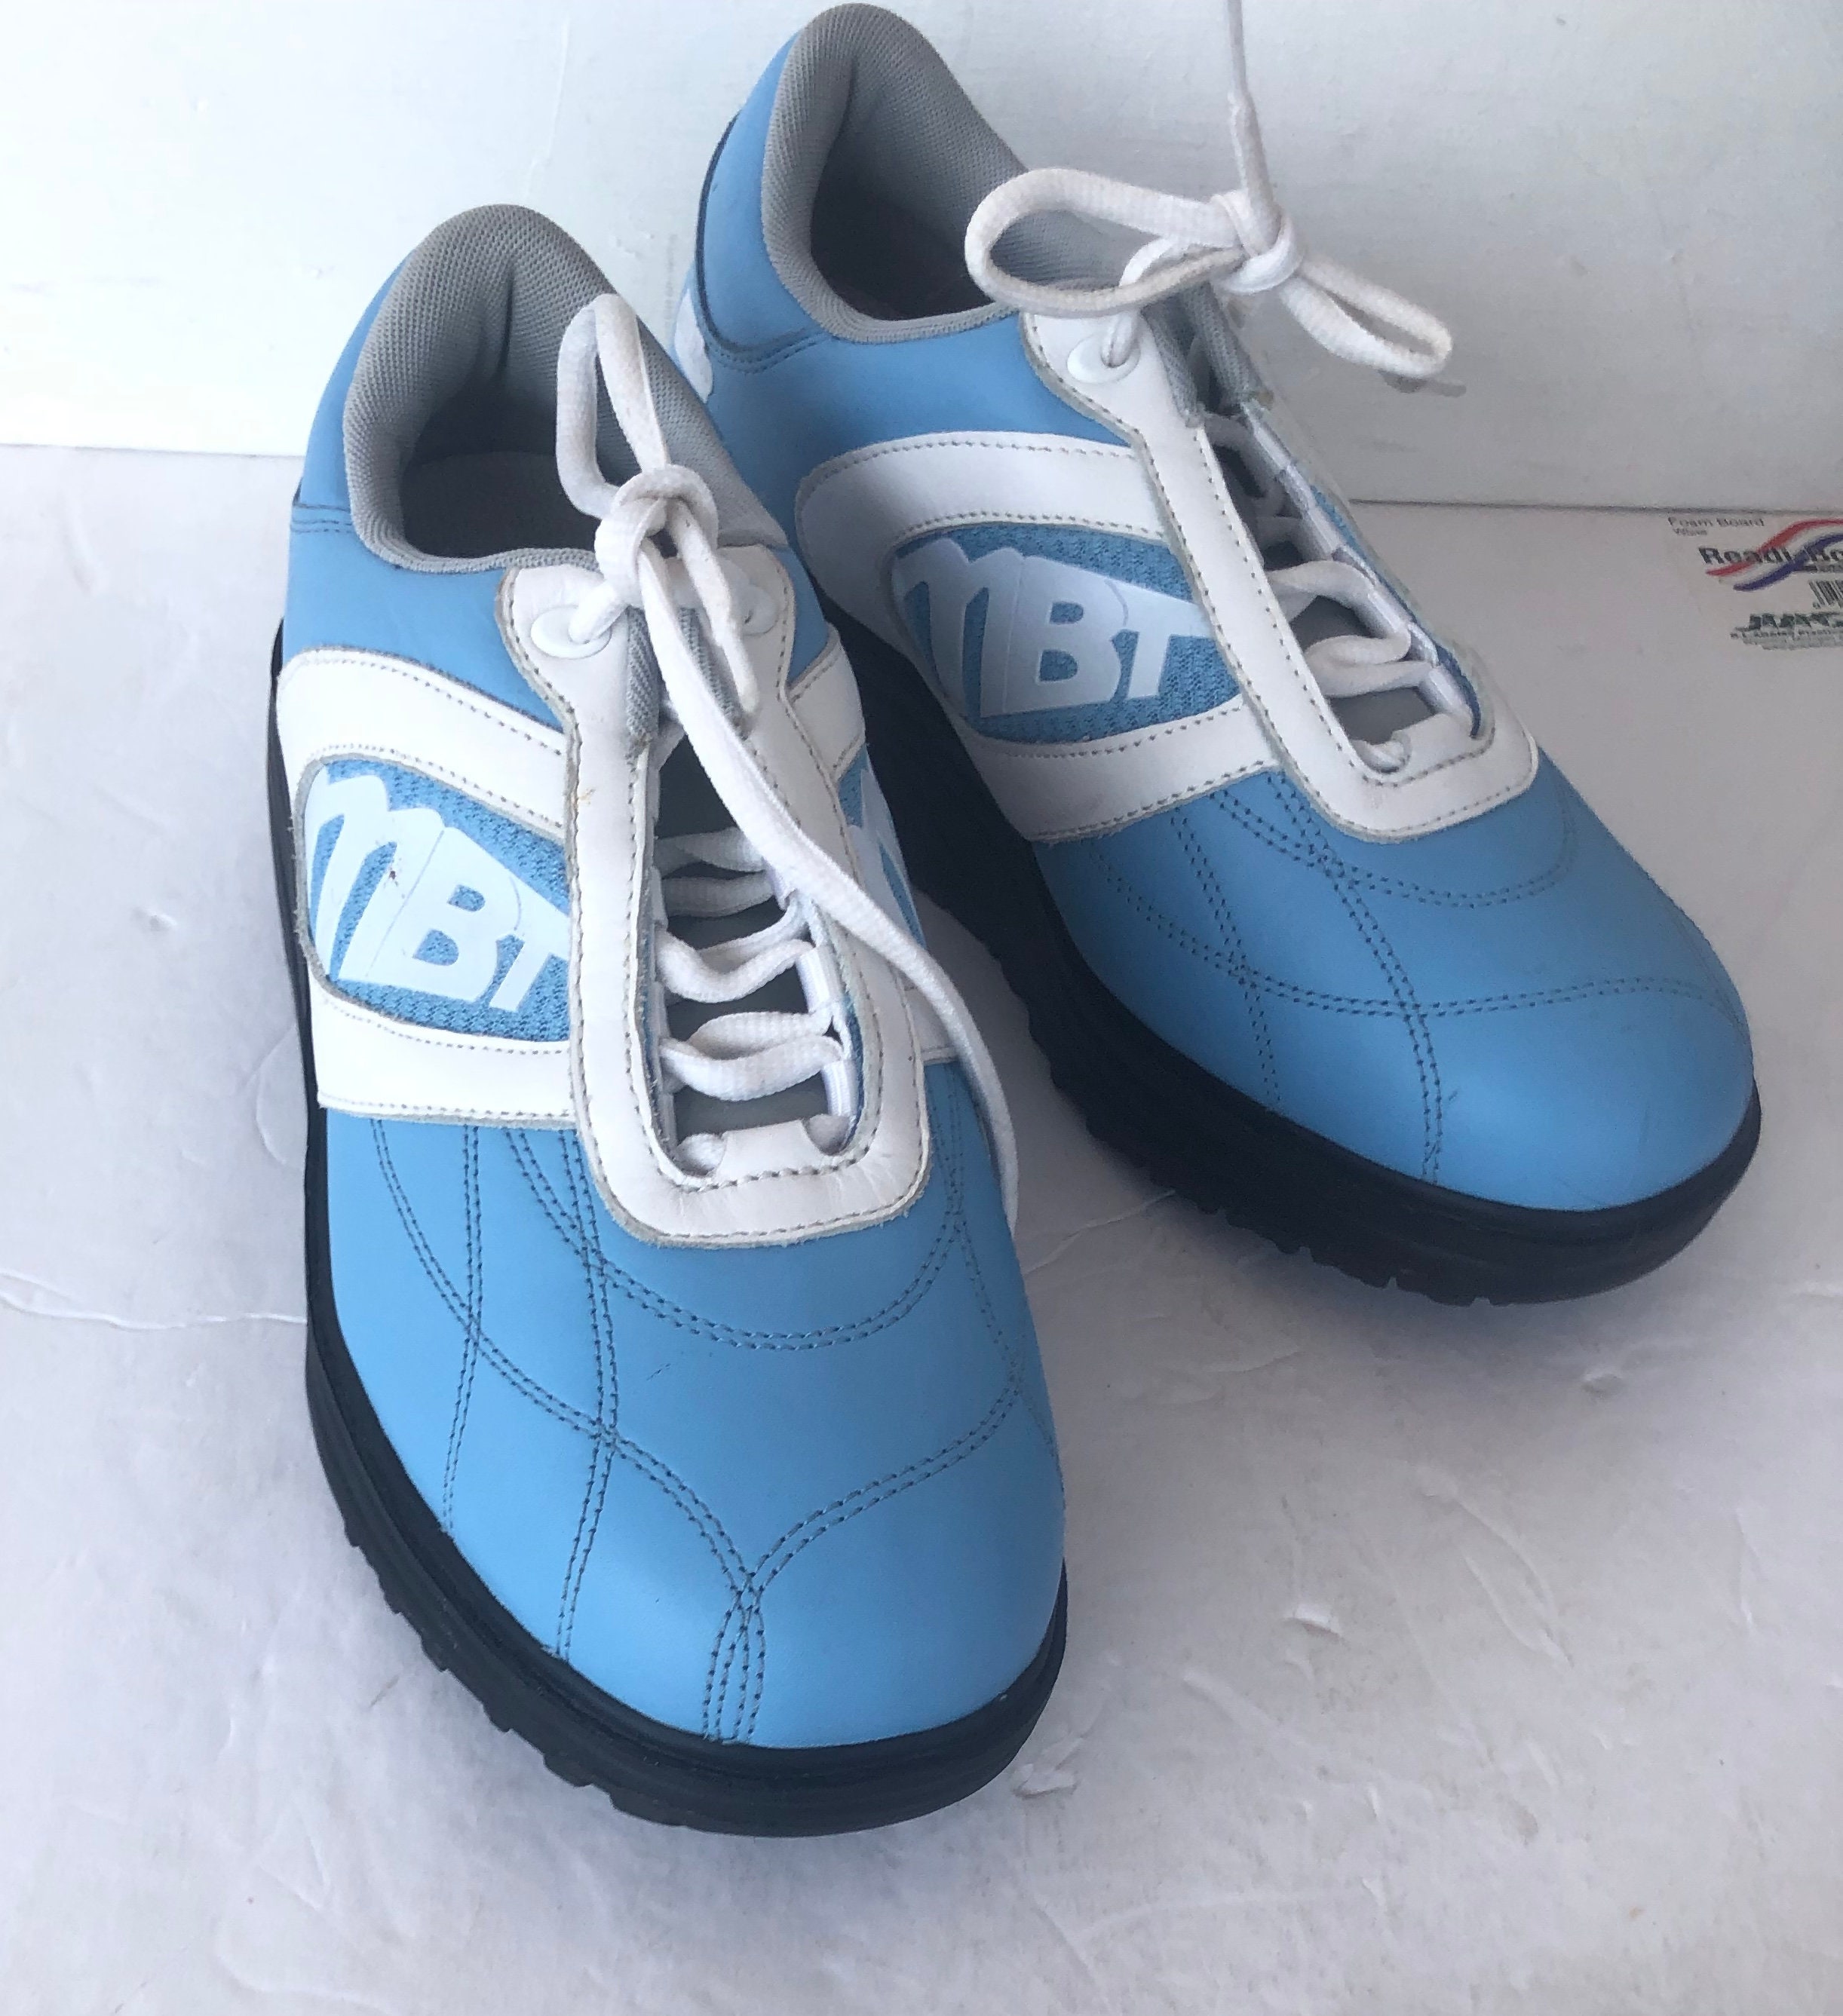 Hurtig frivillig Gammeldags Vintage MBT Blue White Leather Toning Comfort Oxford Shoes - Etsy Hong Kong